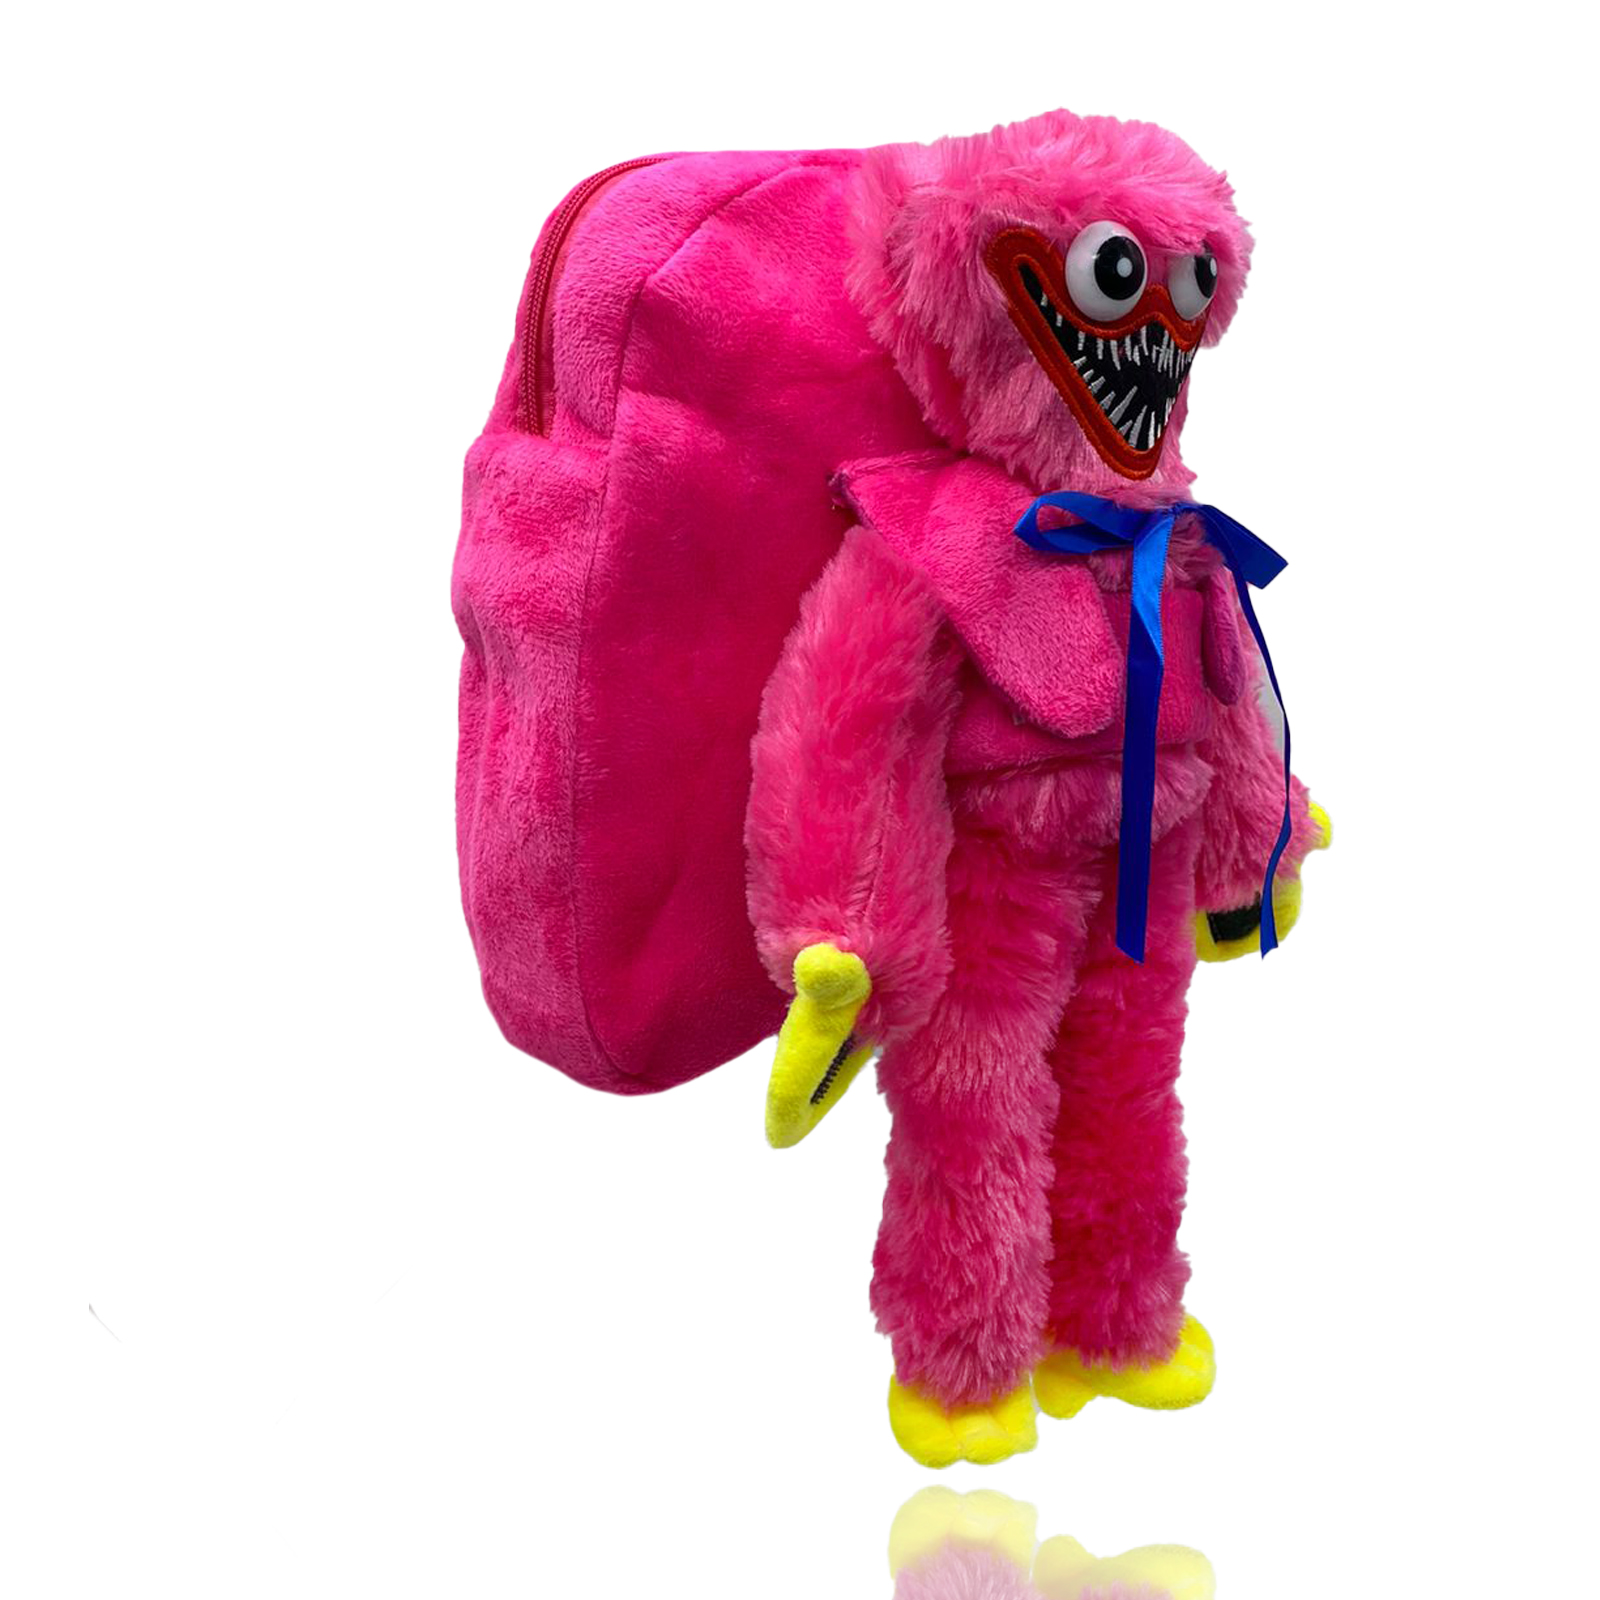 Рюкзак Nano Shop Хаги Ваги Киси Миси с мягкой игрушкой, розовый шапка с игрушкой розовый мишка серая regina